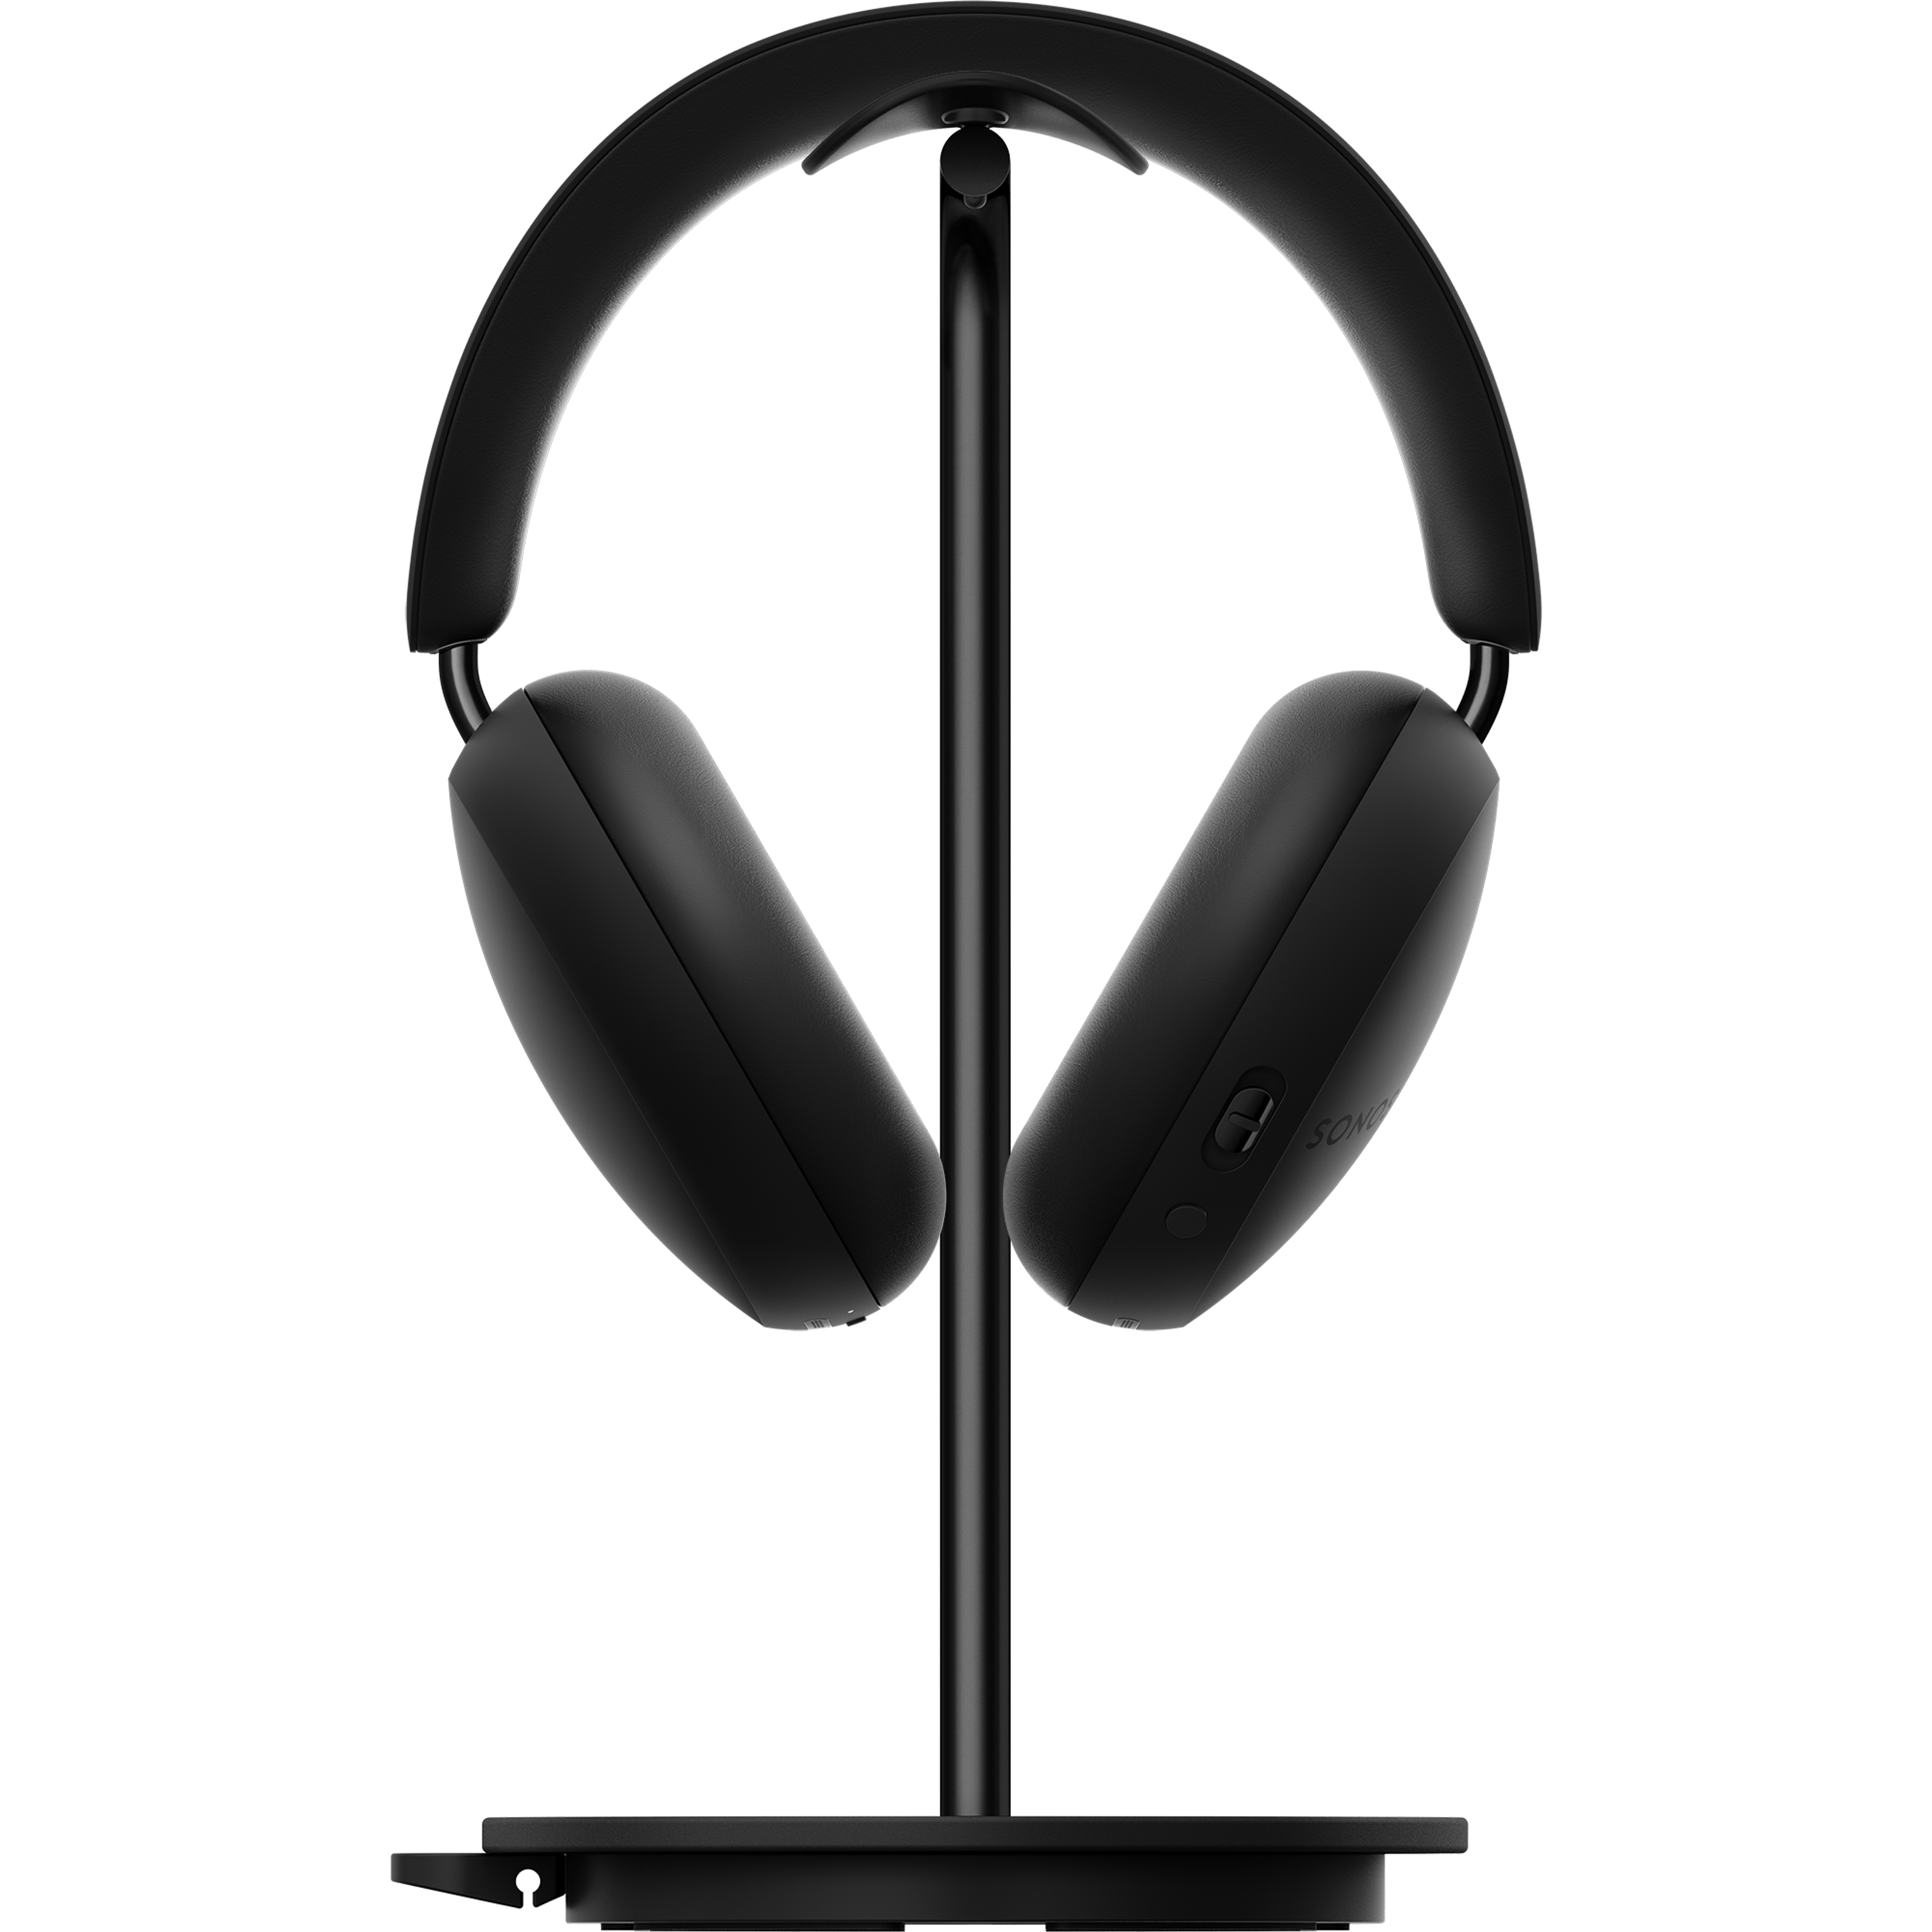 mustat Sonos Ace -kuulokkeet edestä päin Sonos Ace -kuulokkeille tarkoitetussa Sanus-telineessä